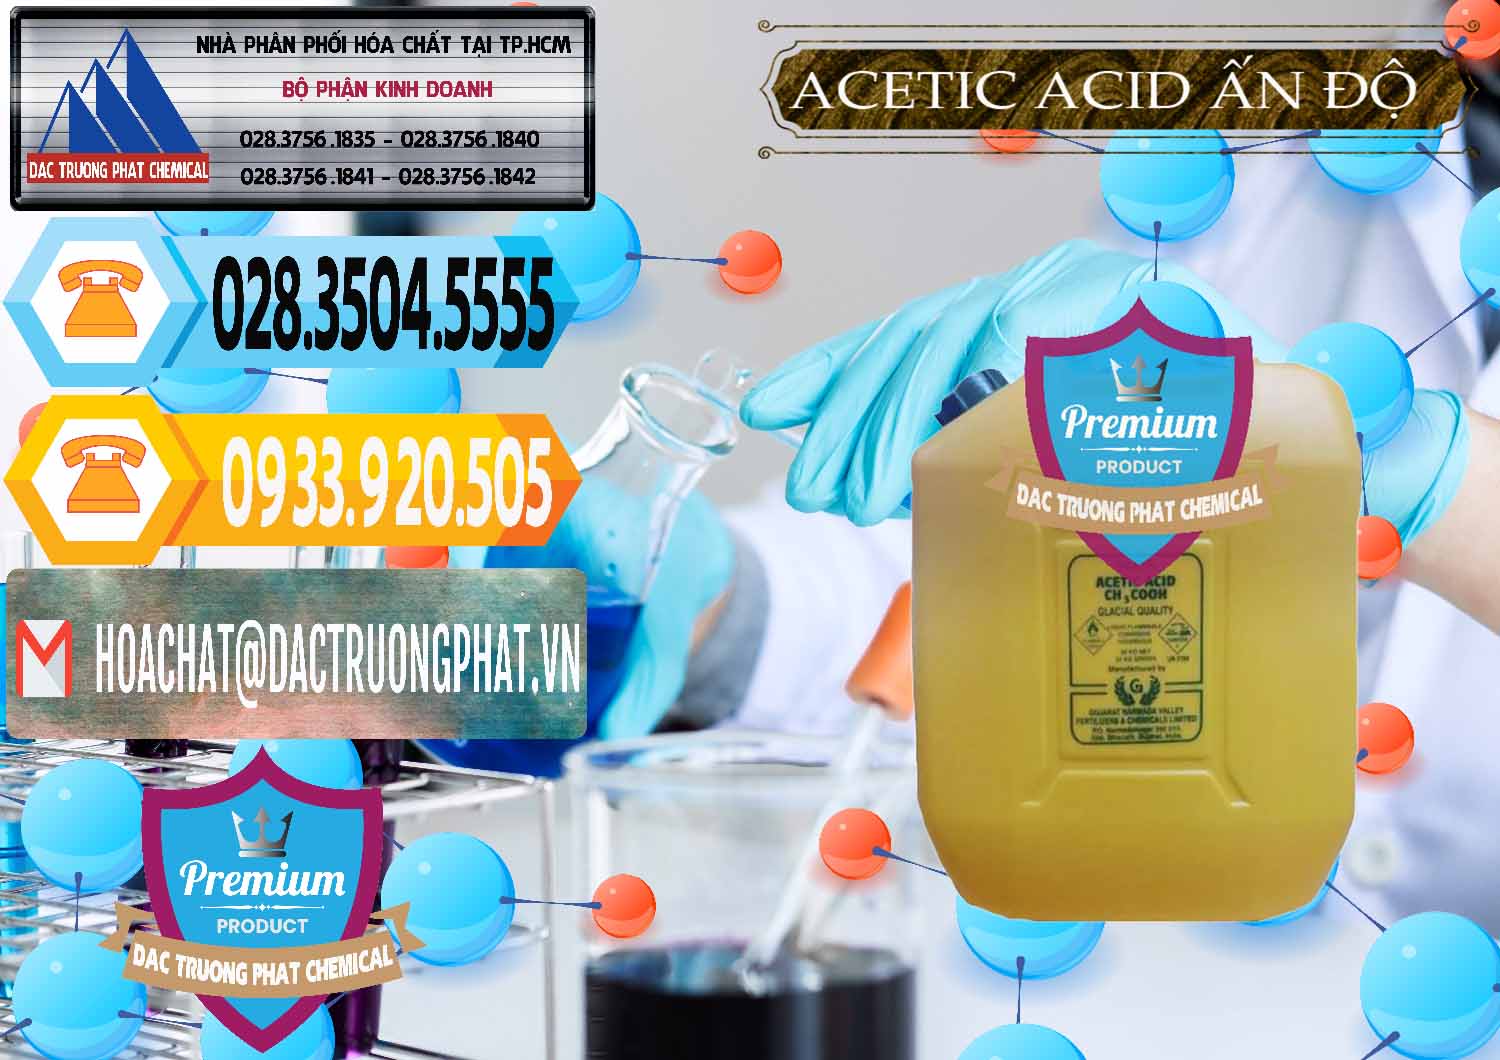 Công ty chuyên cung cấp - bán Acetic Acid – Axit Acetic Ấn Độ India - 0359 - Nhà cung cấp - nhập khẩu hóa chất tại TP.HCM - hoachattayrua.net